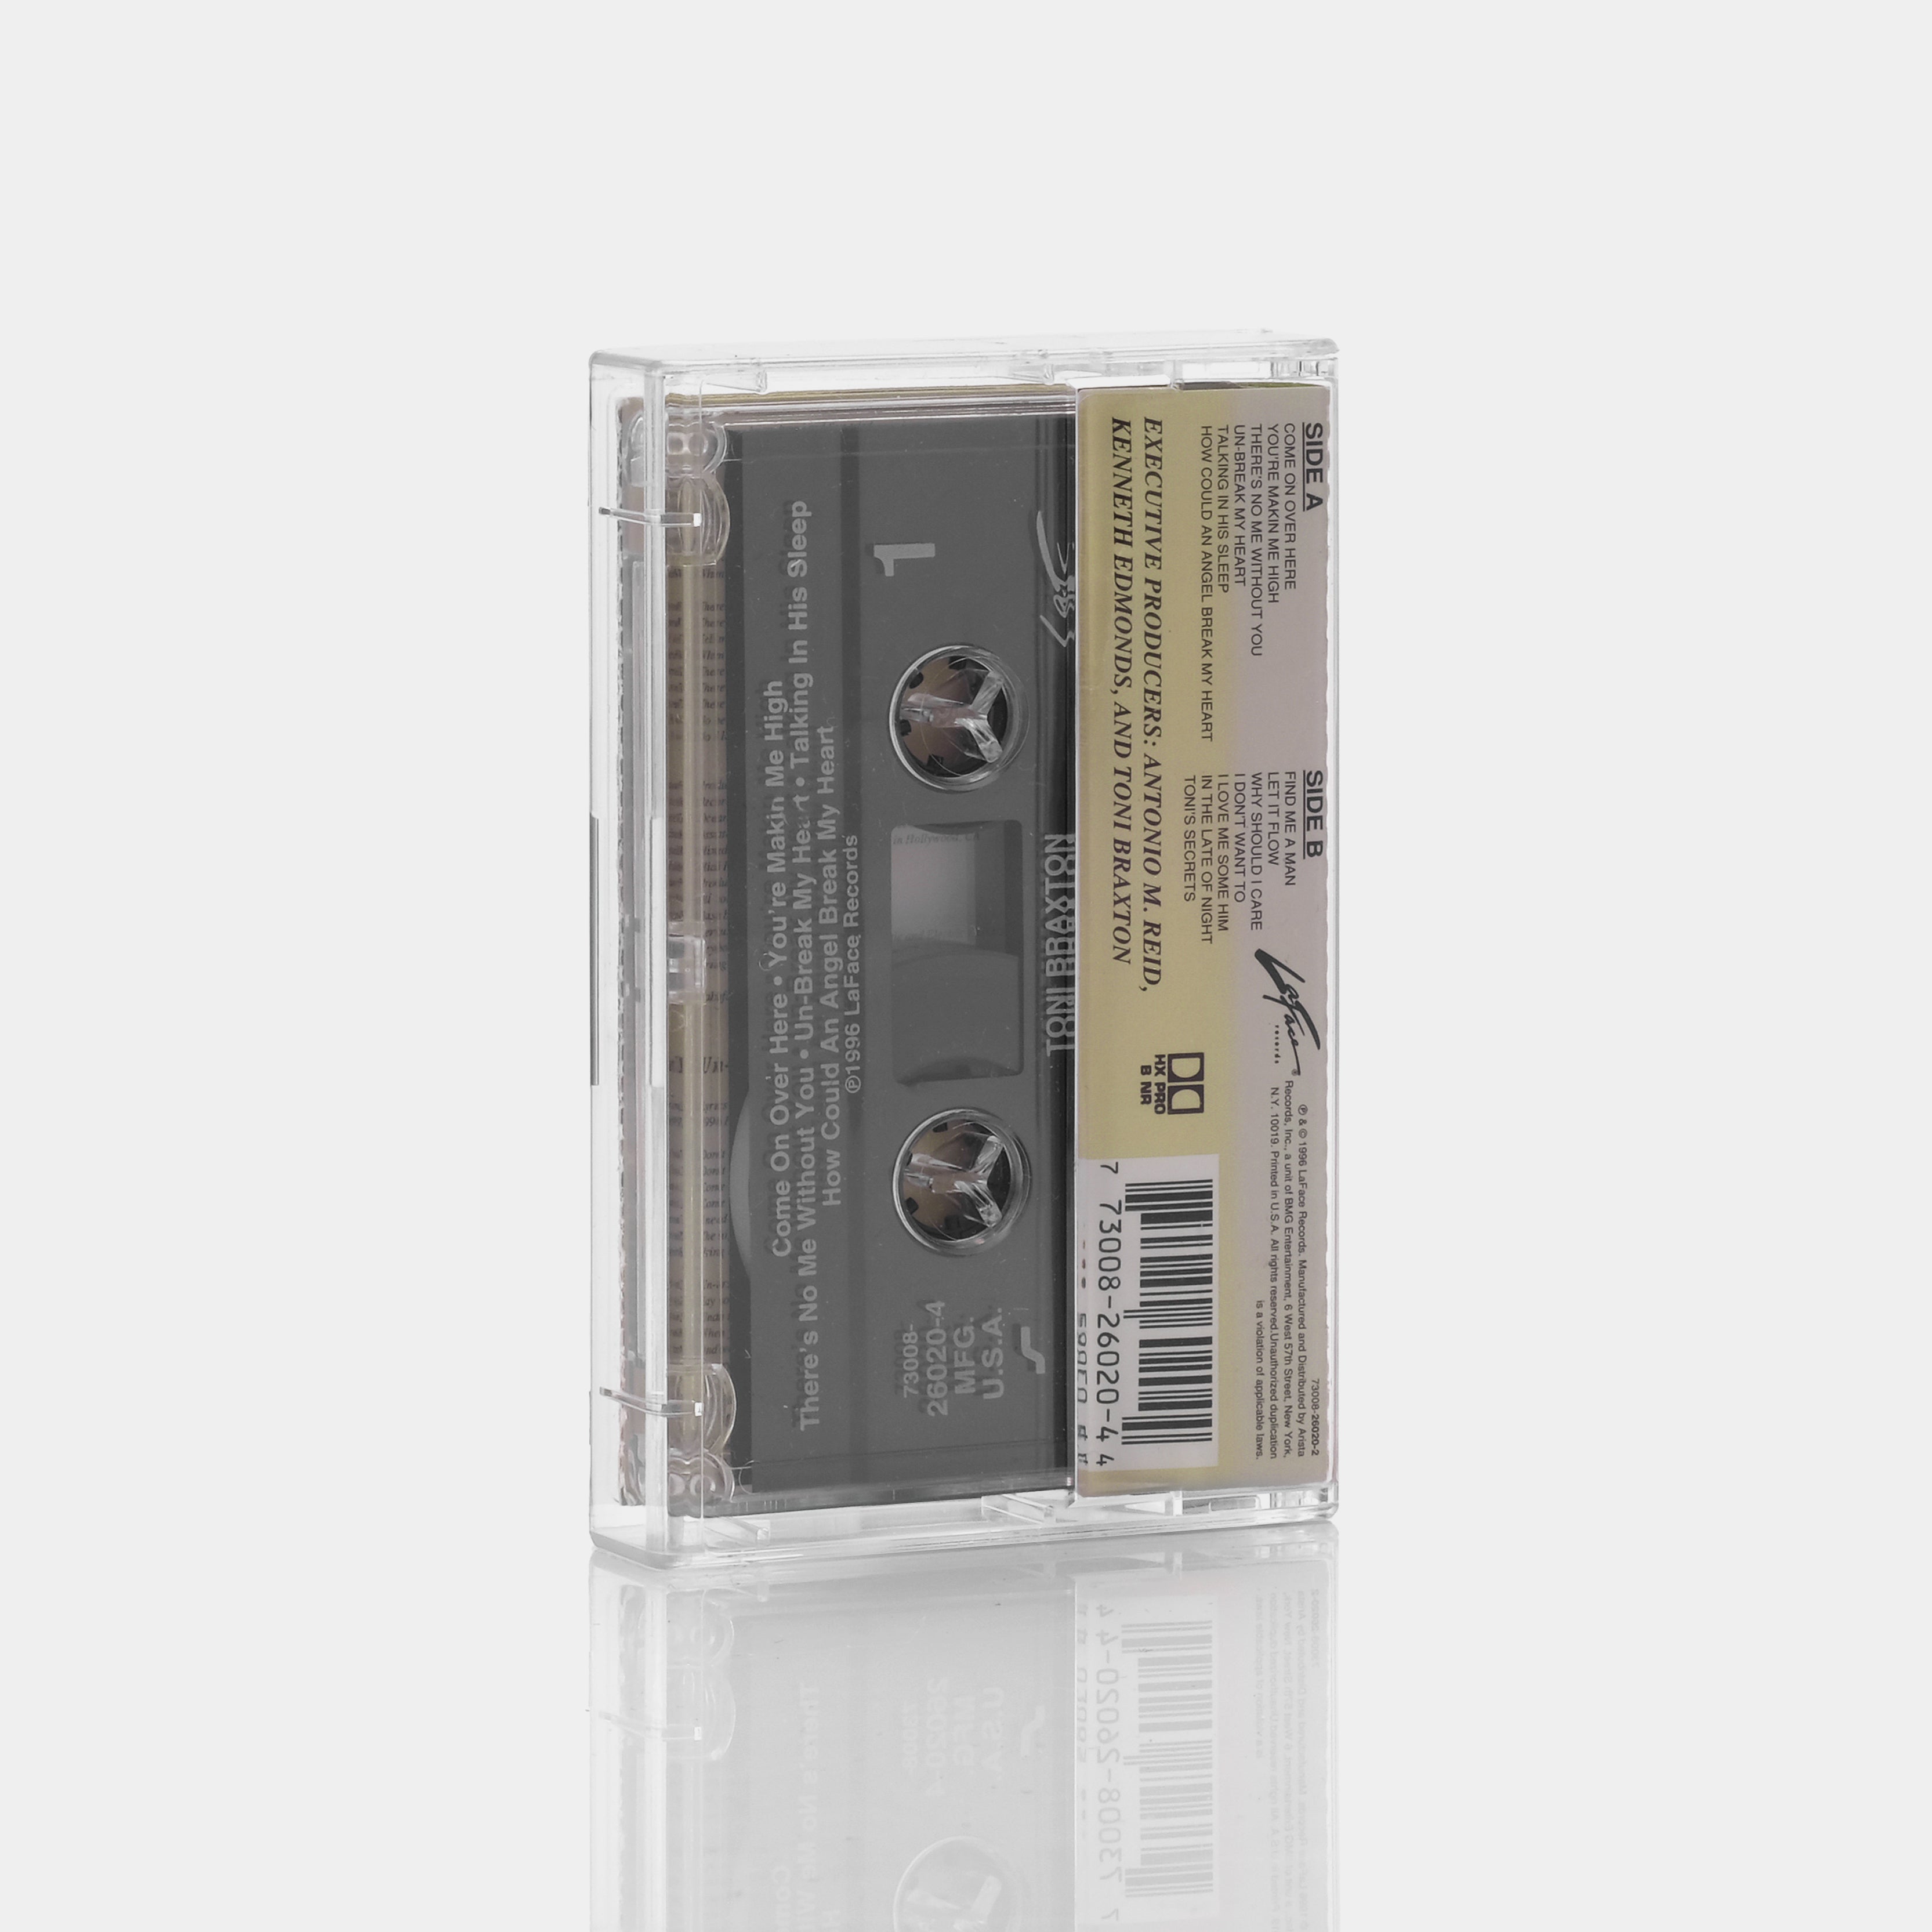 Toni Braxton - Secrets Cassette Tape